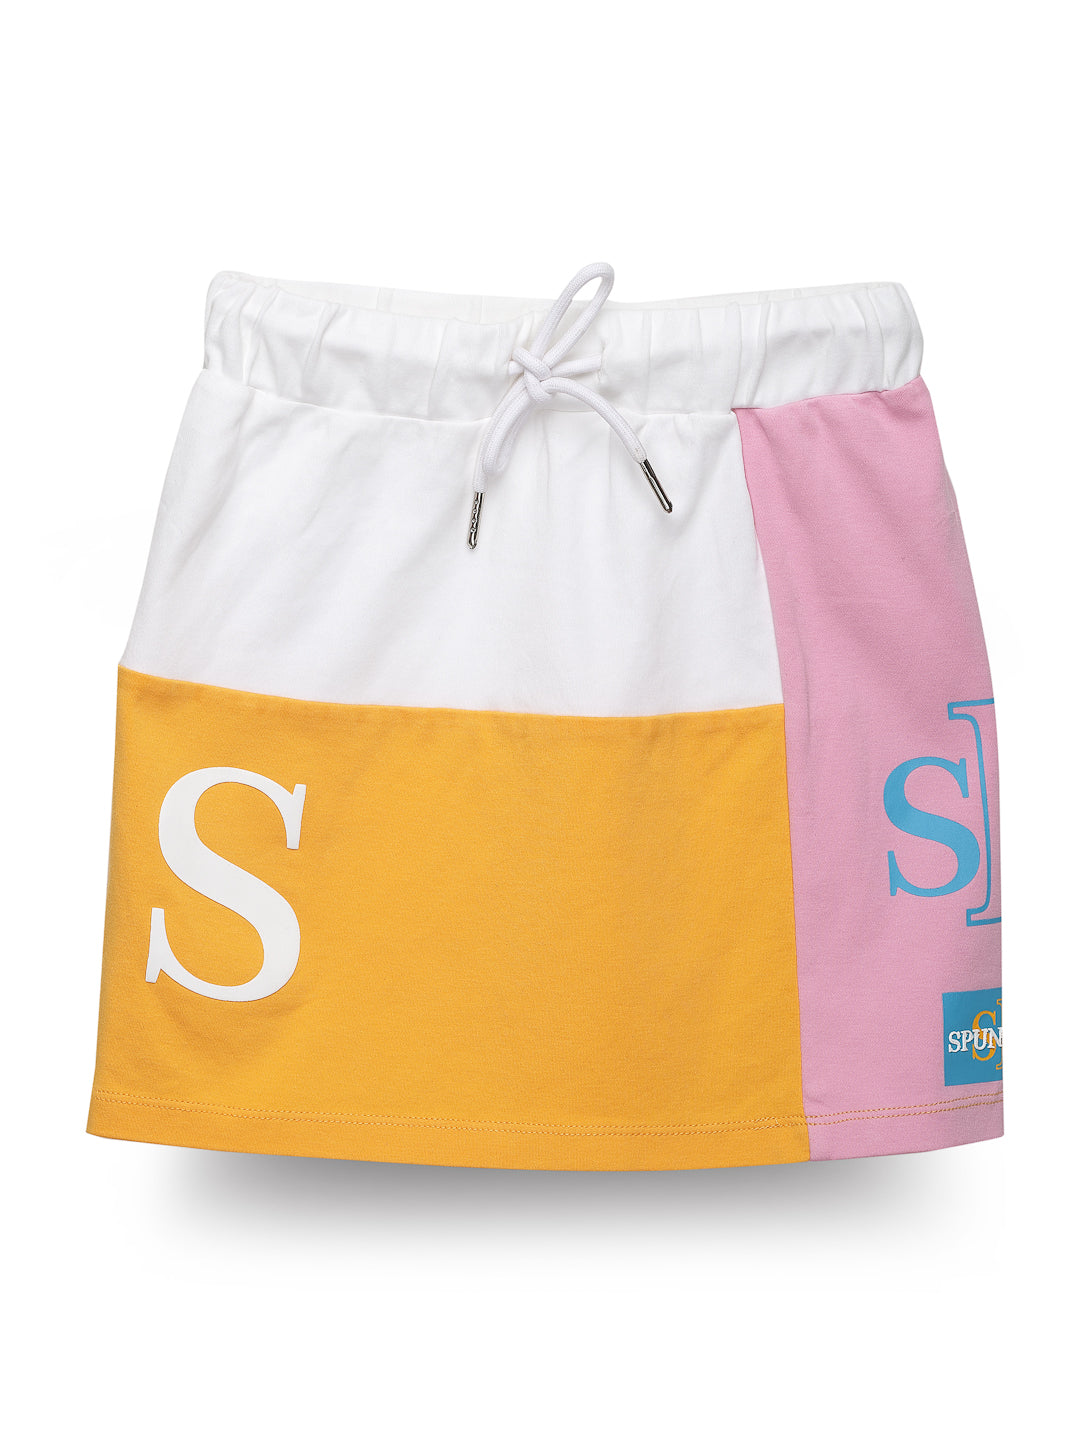 Stylish white cut & Sew 100% cotton skirt